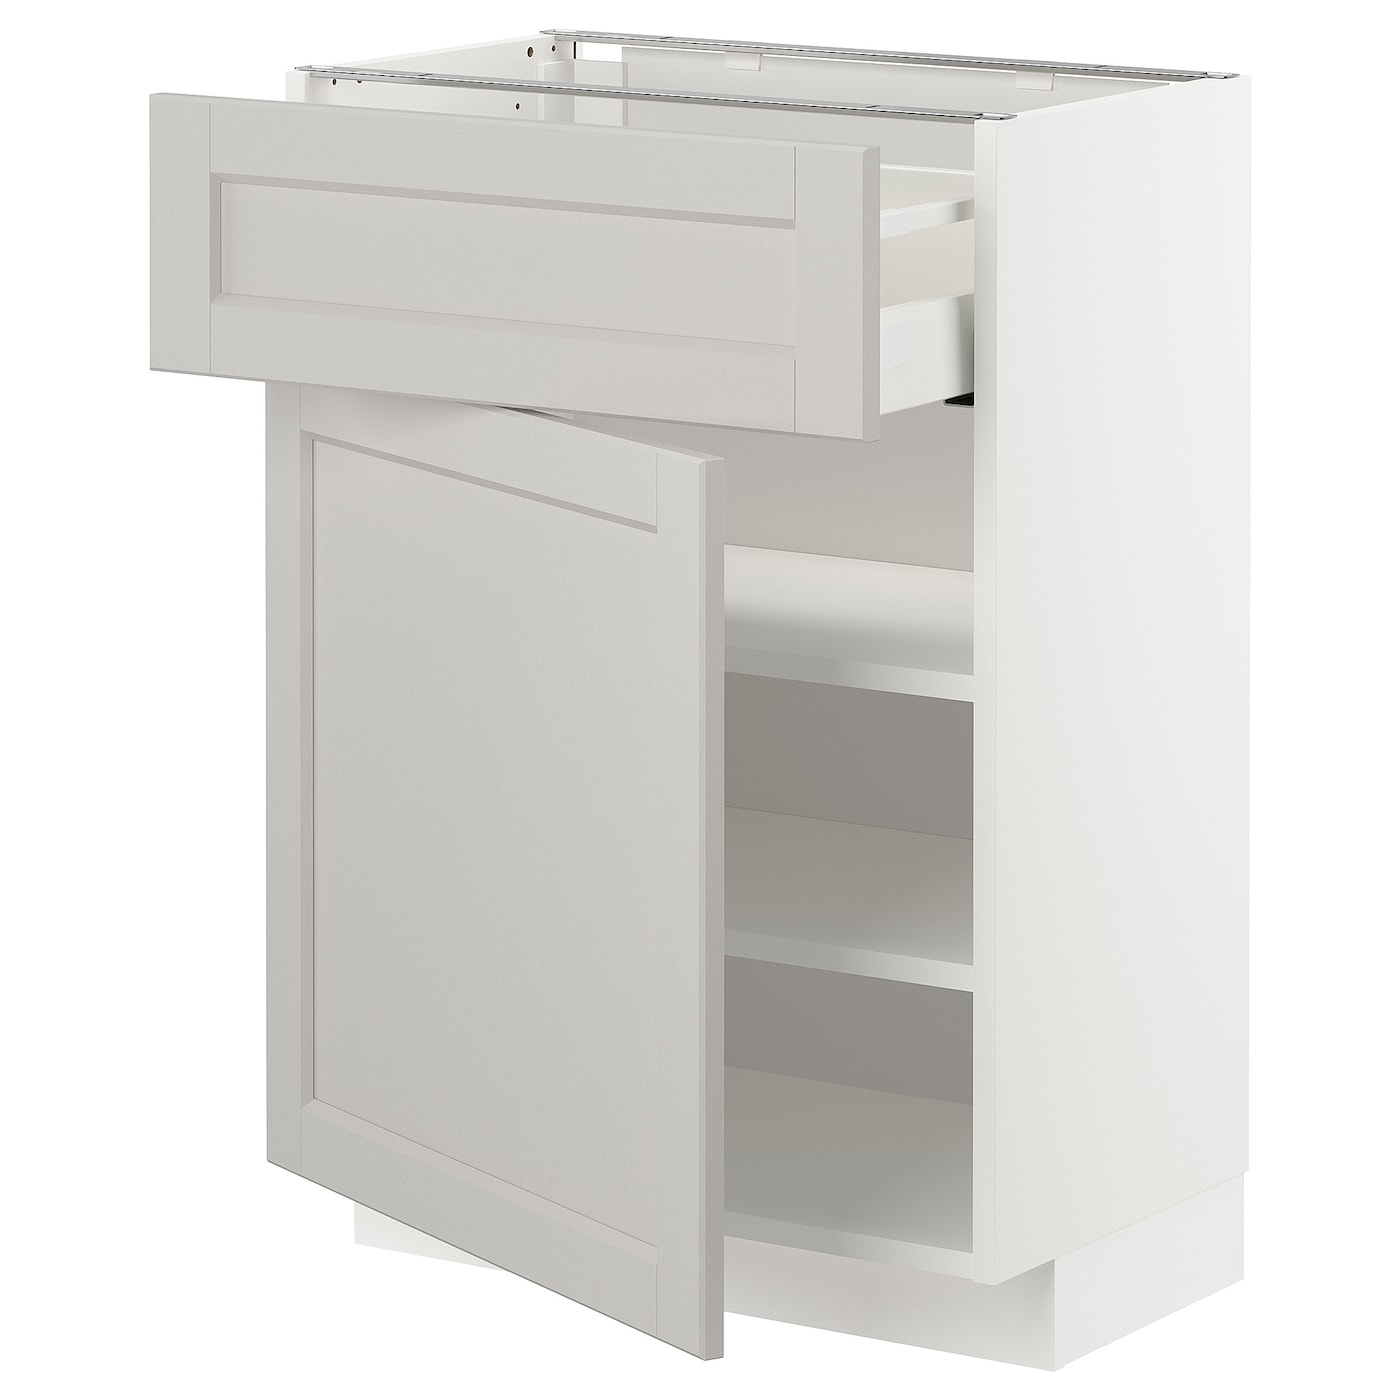 Напольный кухонный шкаф  - IKEA METOD MAXIMERA, 88x39,5x60см, белый/светло-серый, МЕТОД МАКСИМЕРА ИКЕА